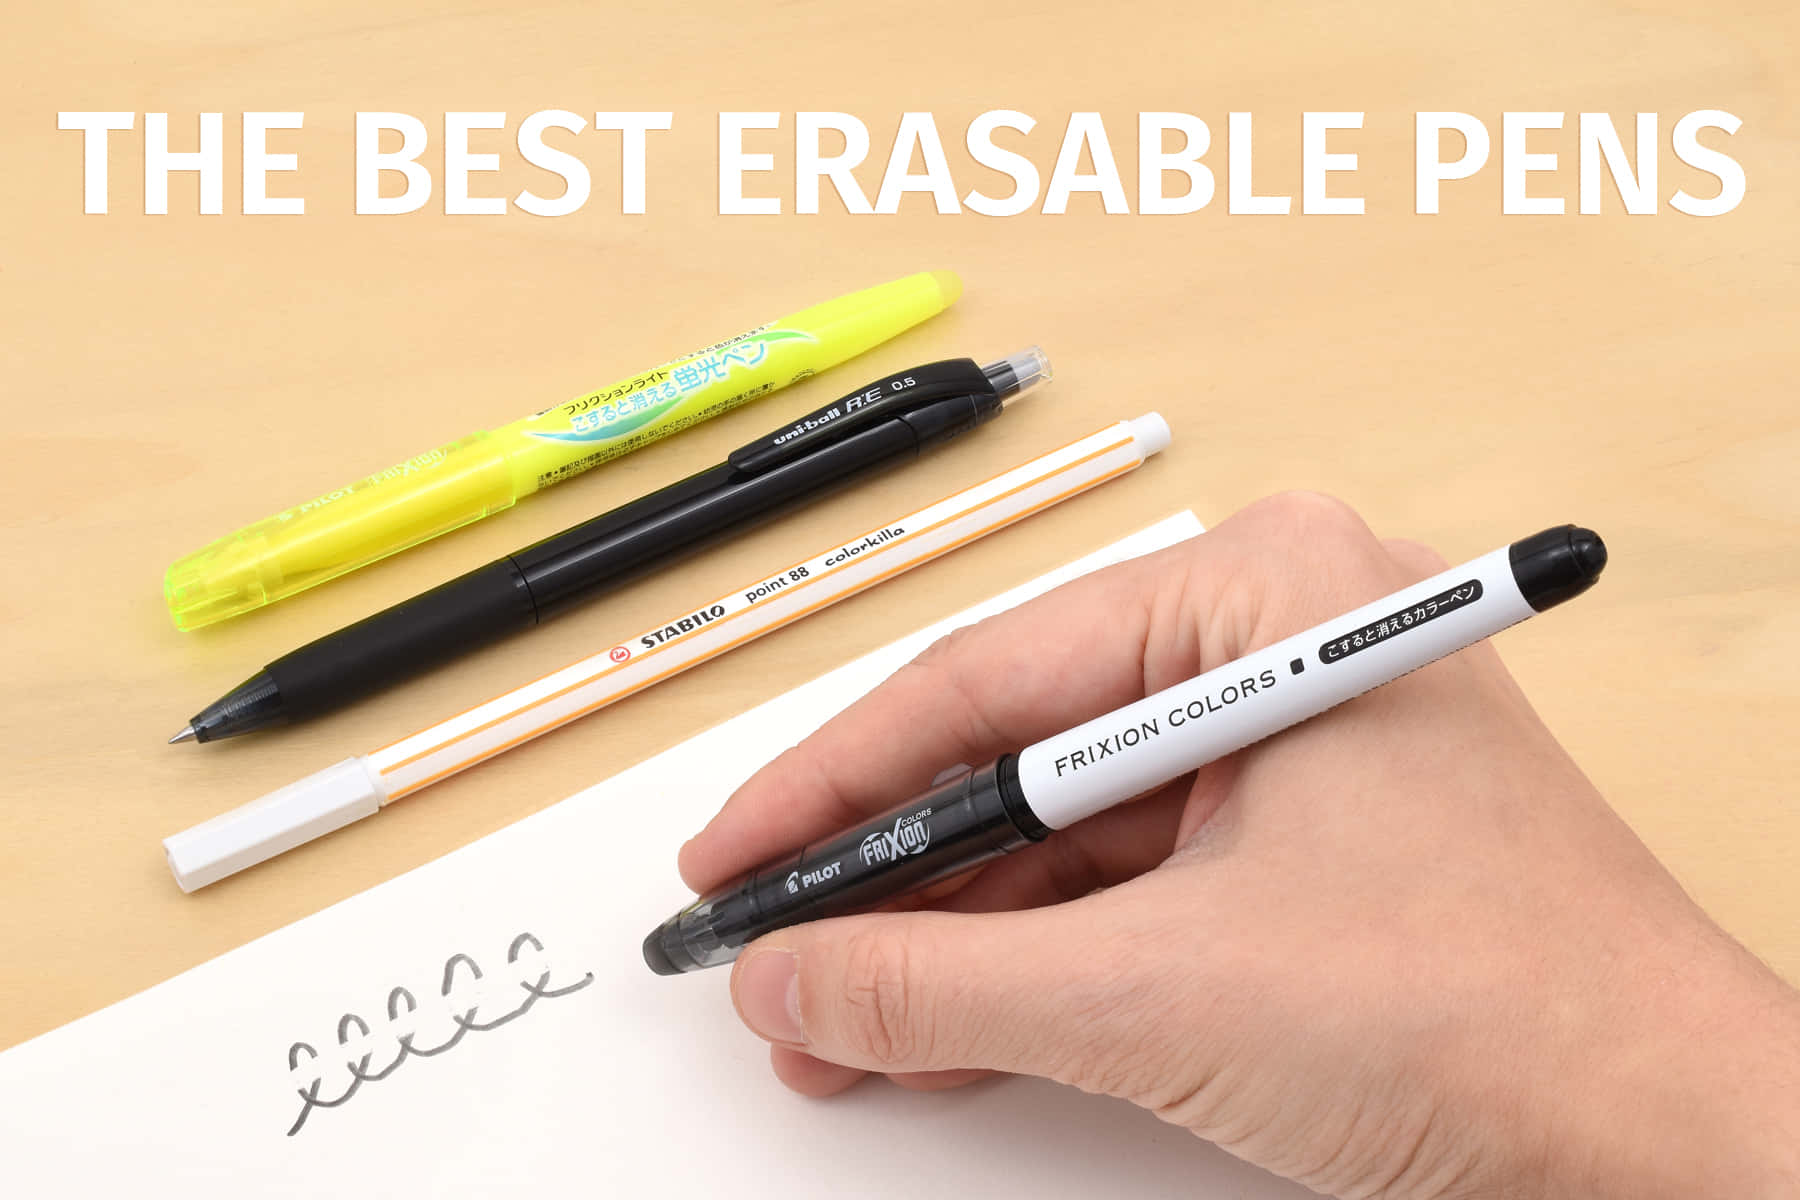 The Best Erasable Pens